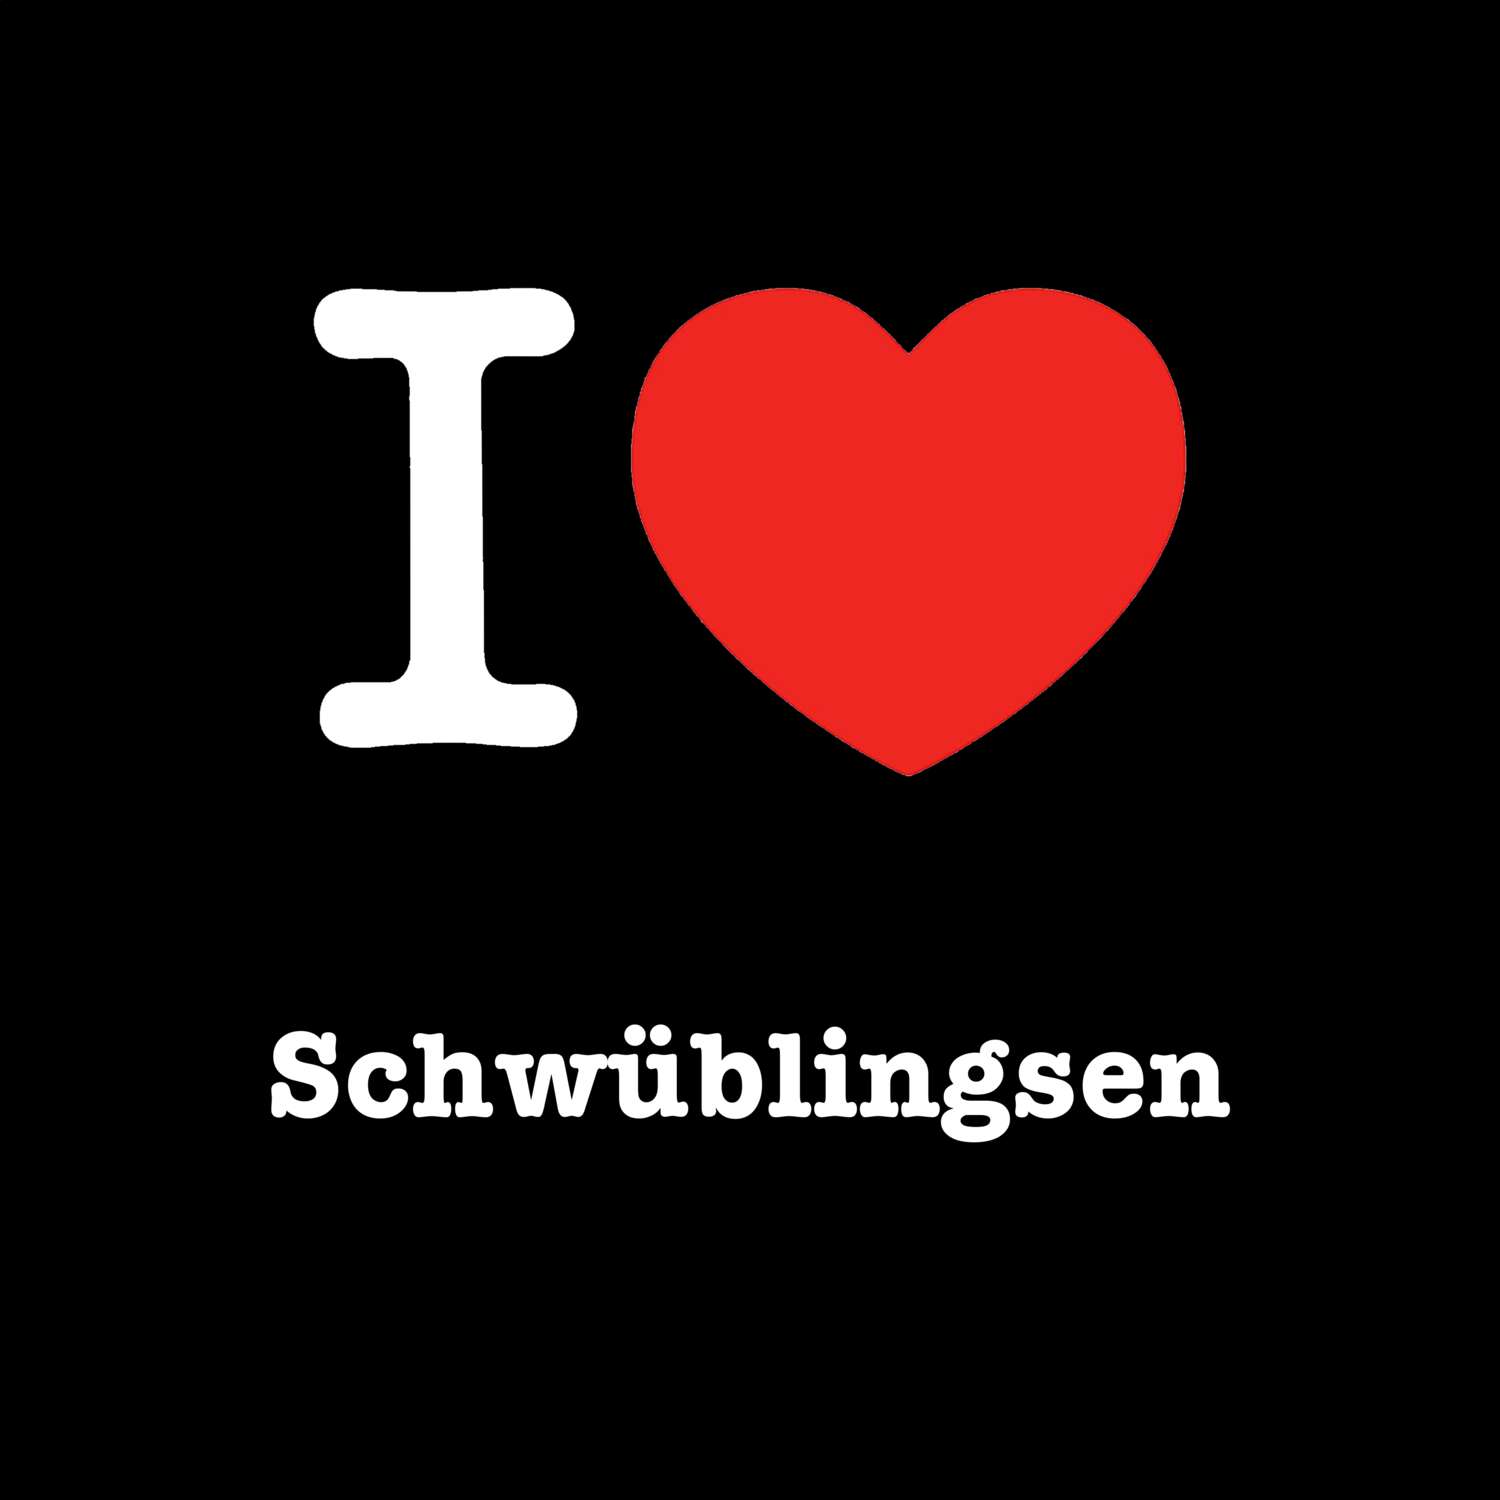 Schwüblingsen T-Shirt »I love«